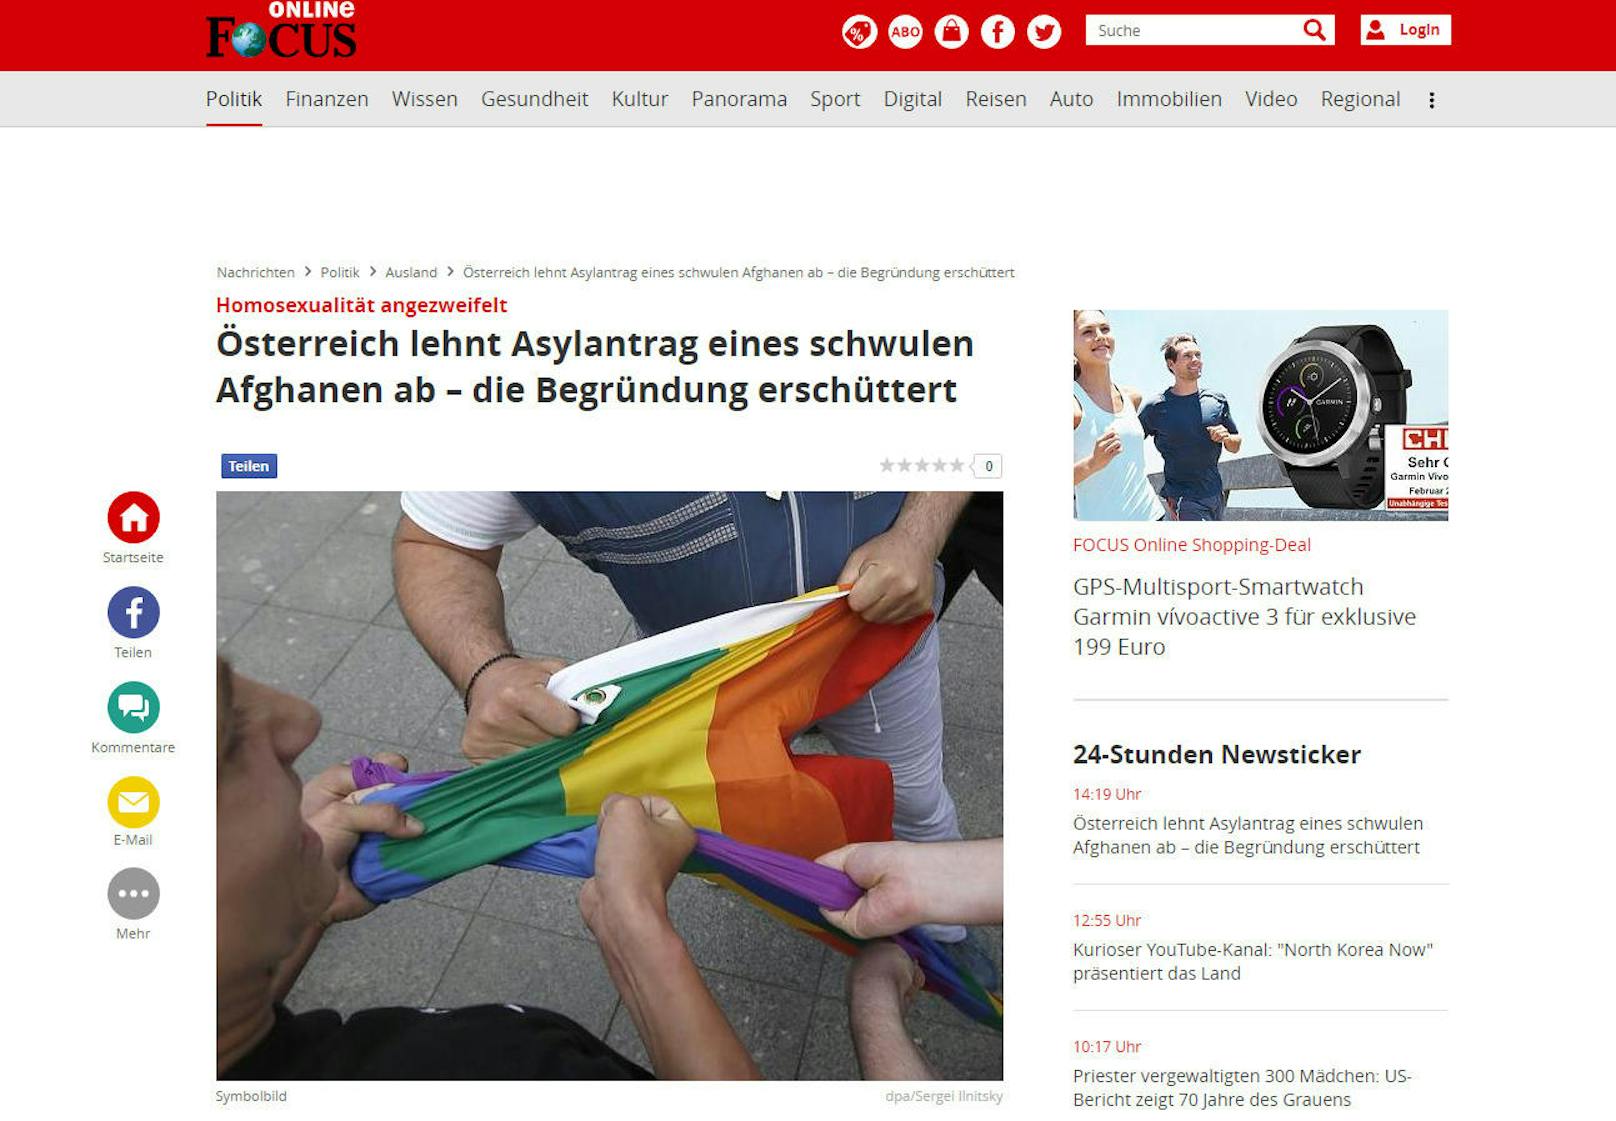 "Österreich lehnt Asylantrag eines schwulen Afghanen ab ? die Begründung erschüttert", titelt der "Focus".